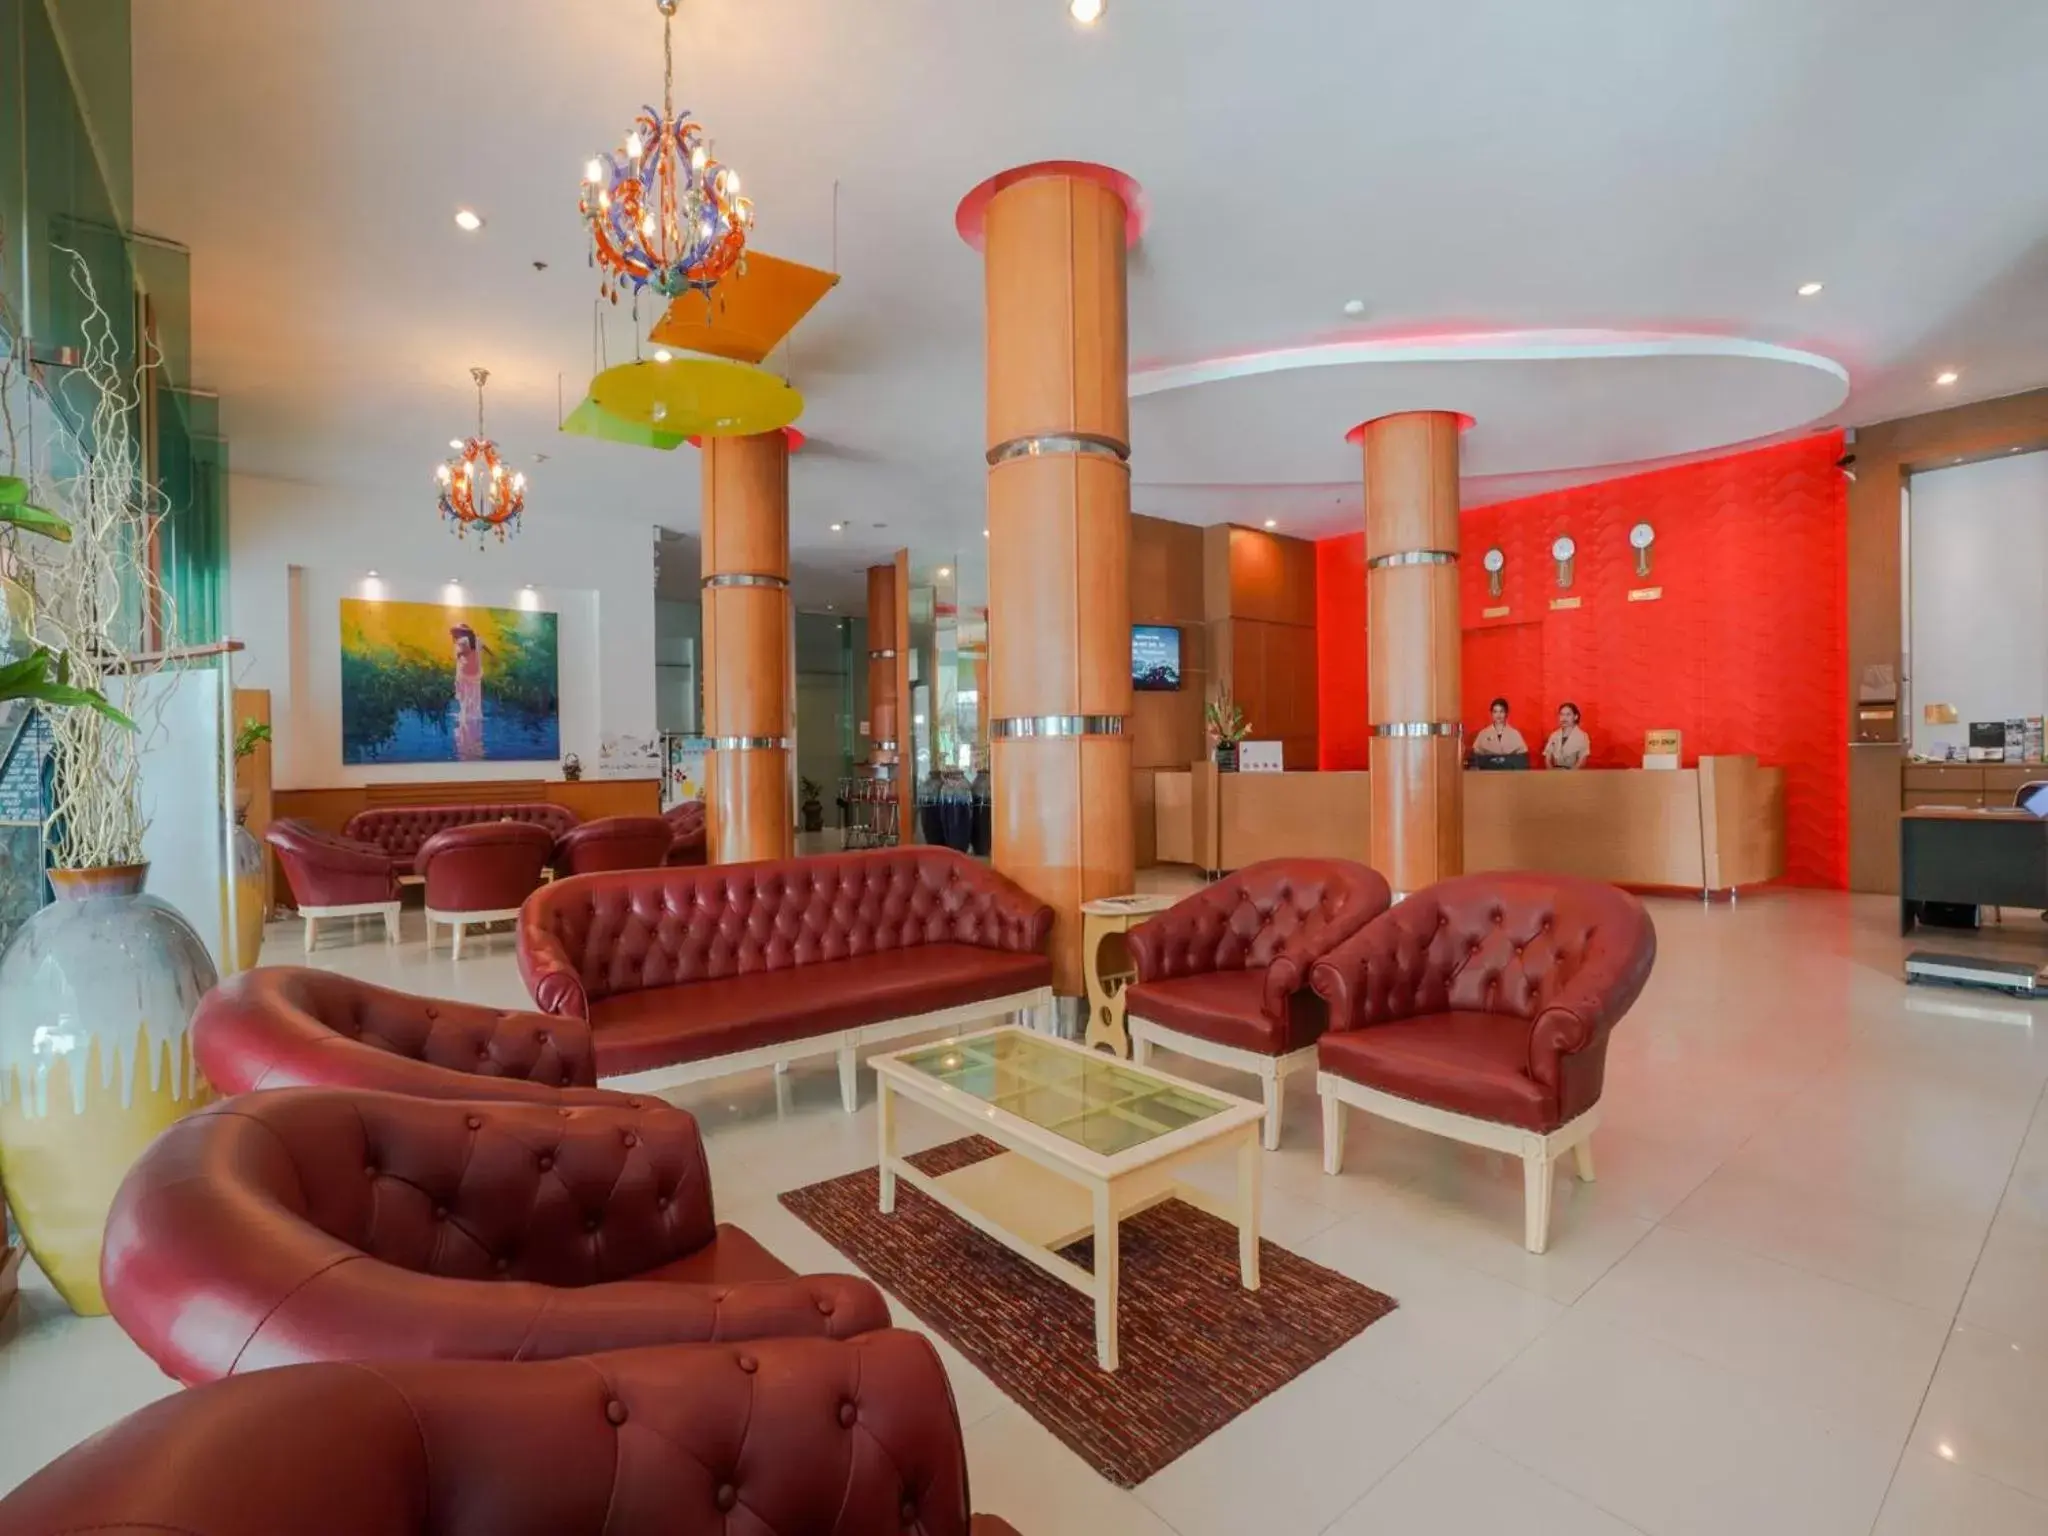 Lobby or reception in Baron Beach Hotel